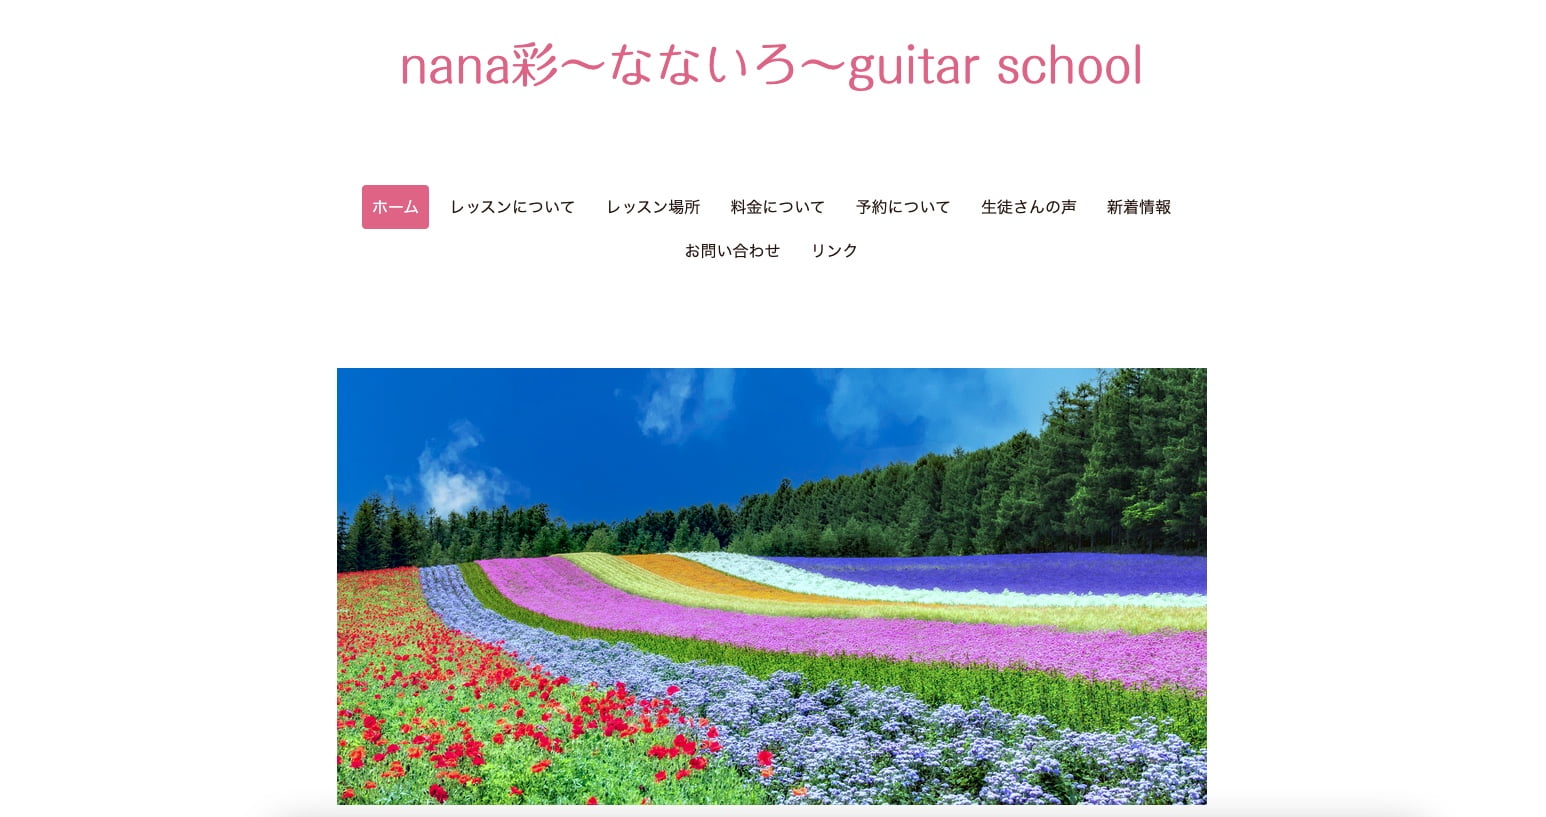 nana彩〜なないろ〜ギタースクール